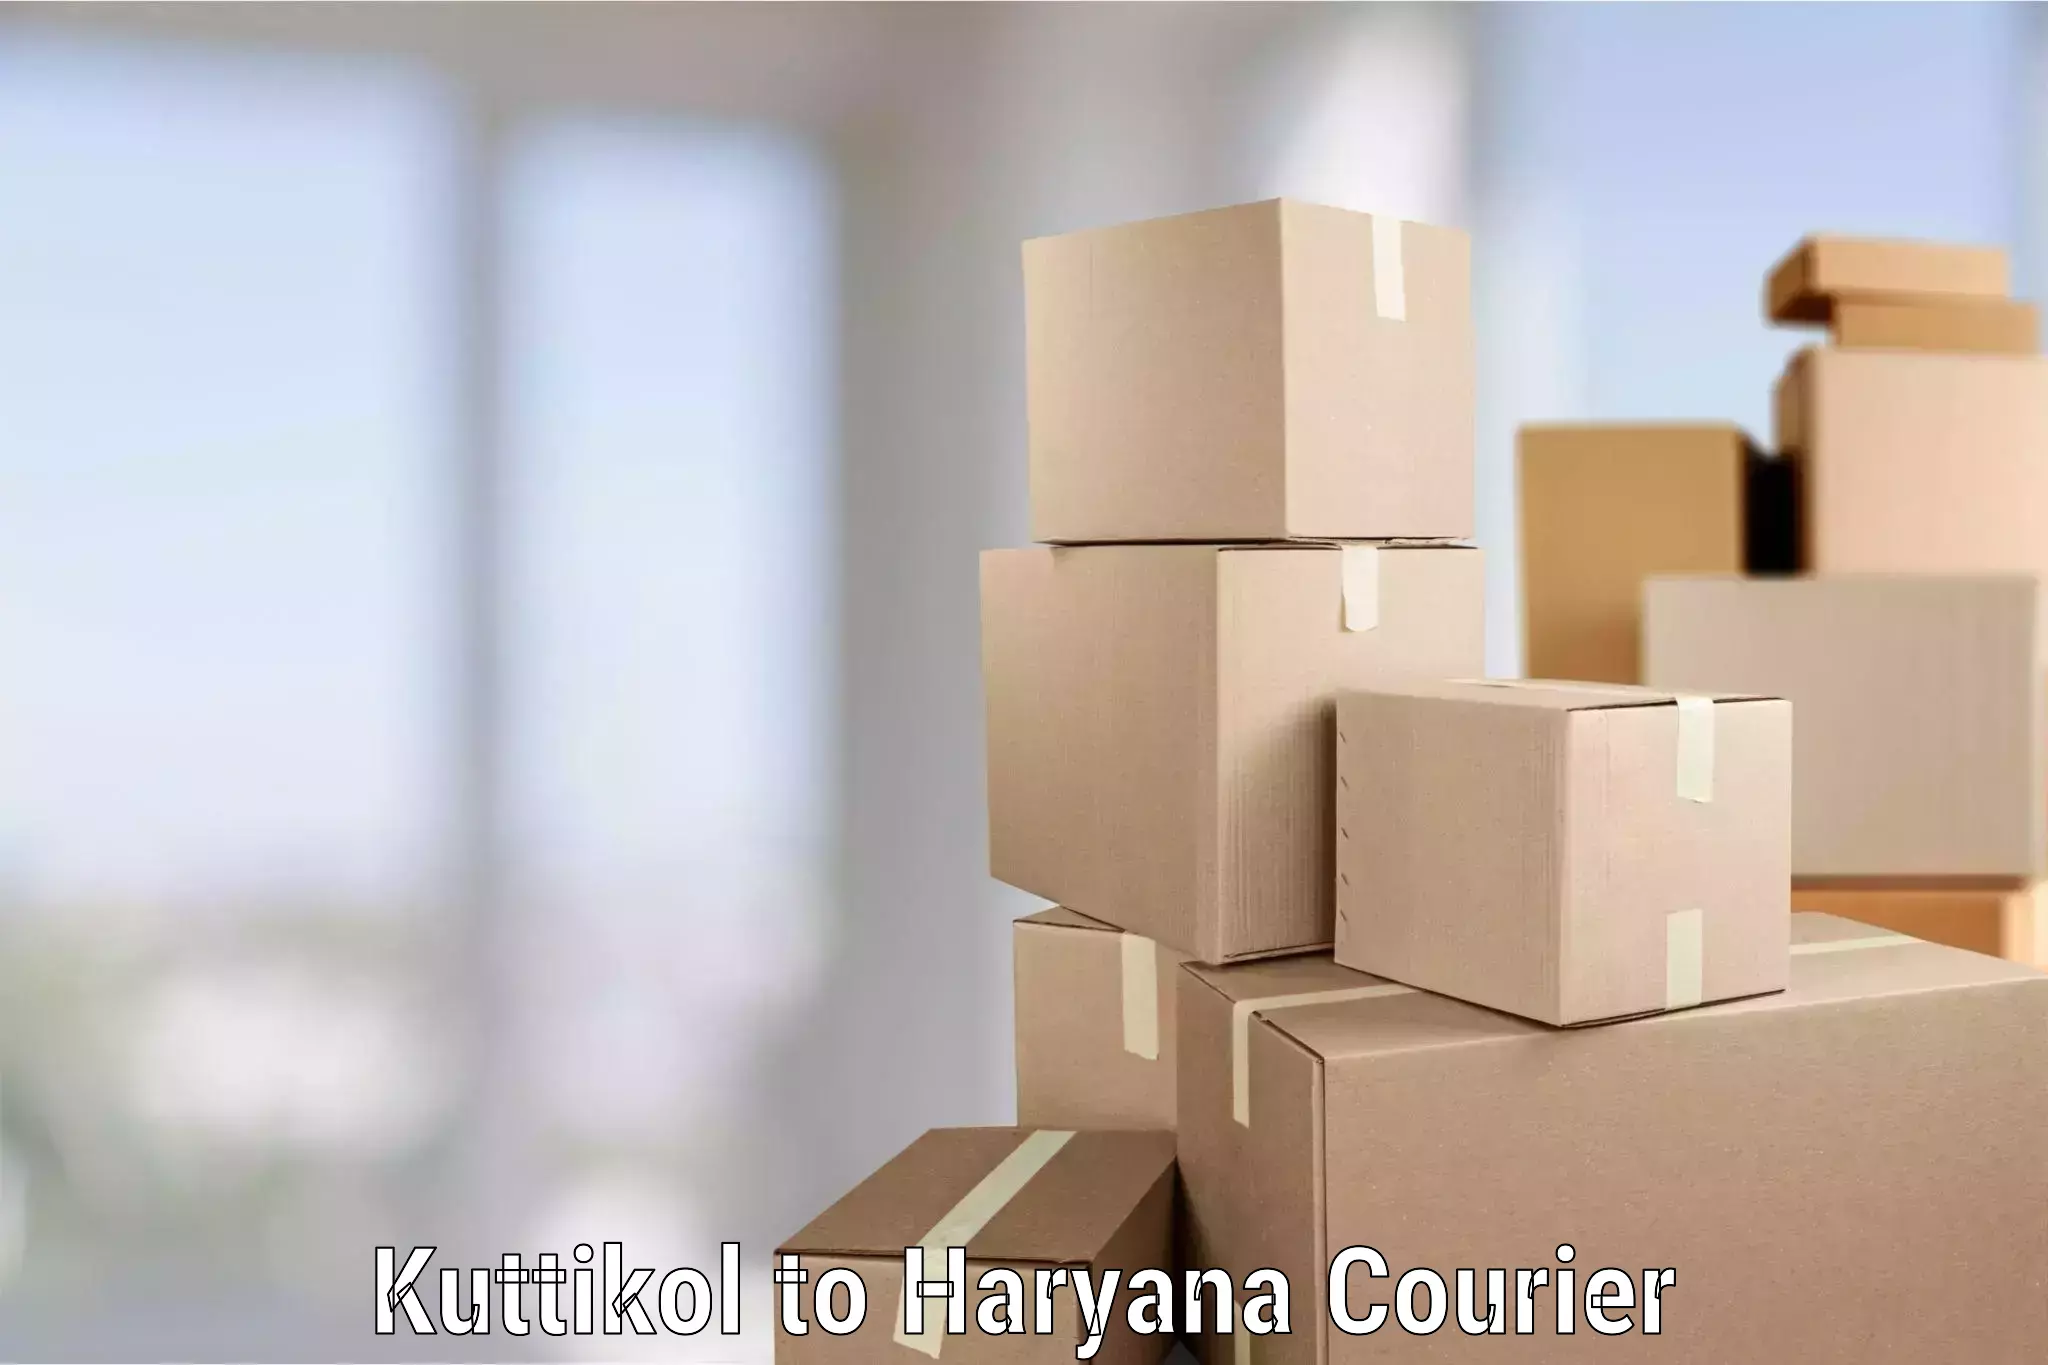 Residential furniture transport Kuttikol to NCR Haryana